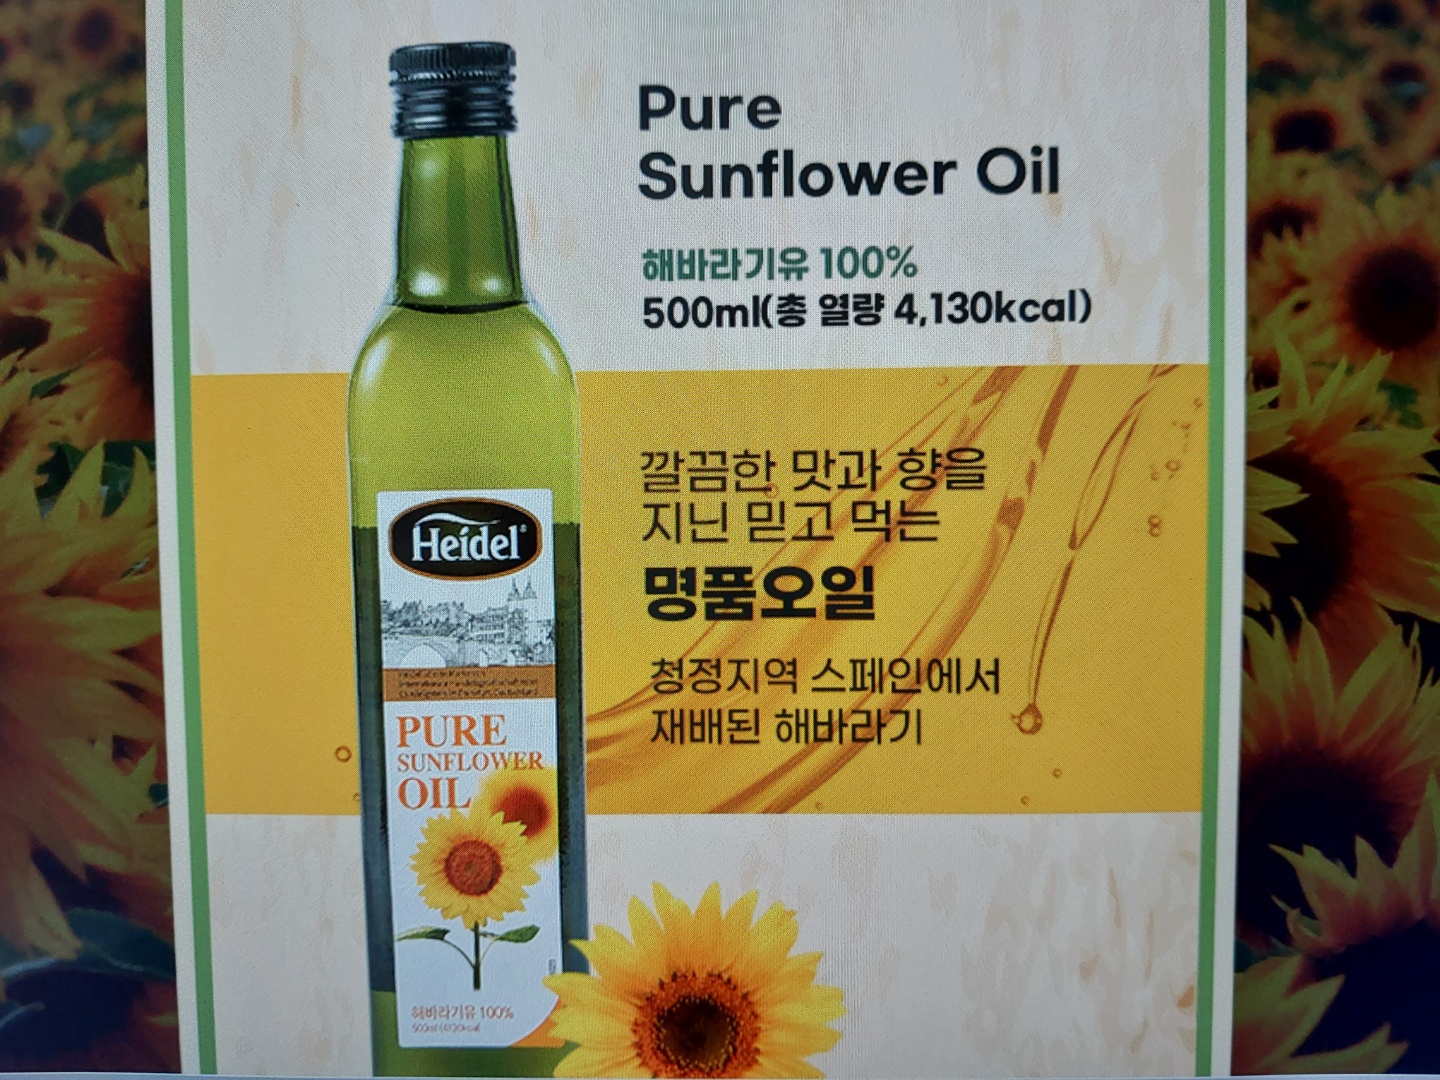 48531 - Sunflower oil Korea